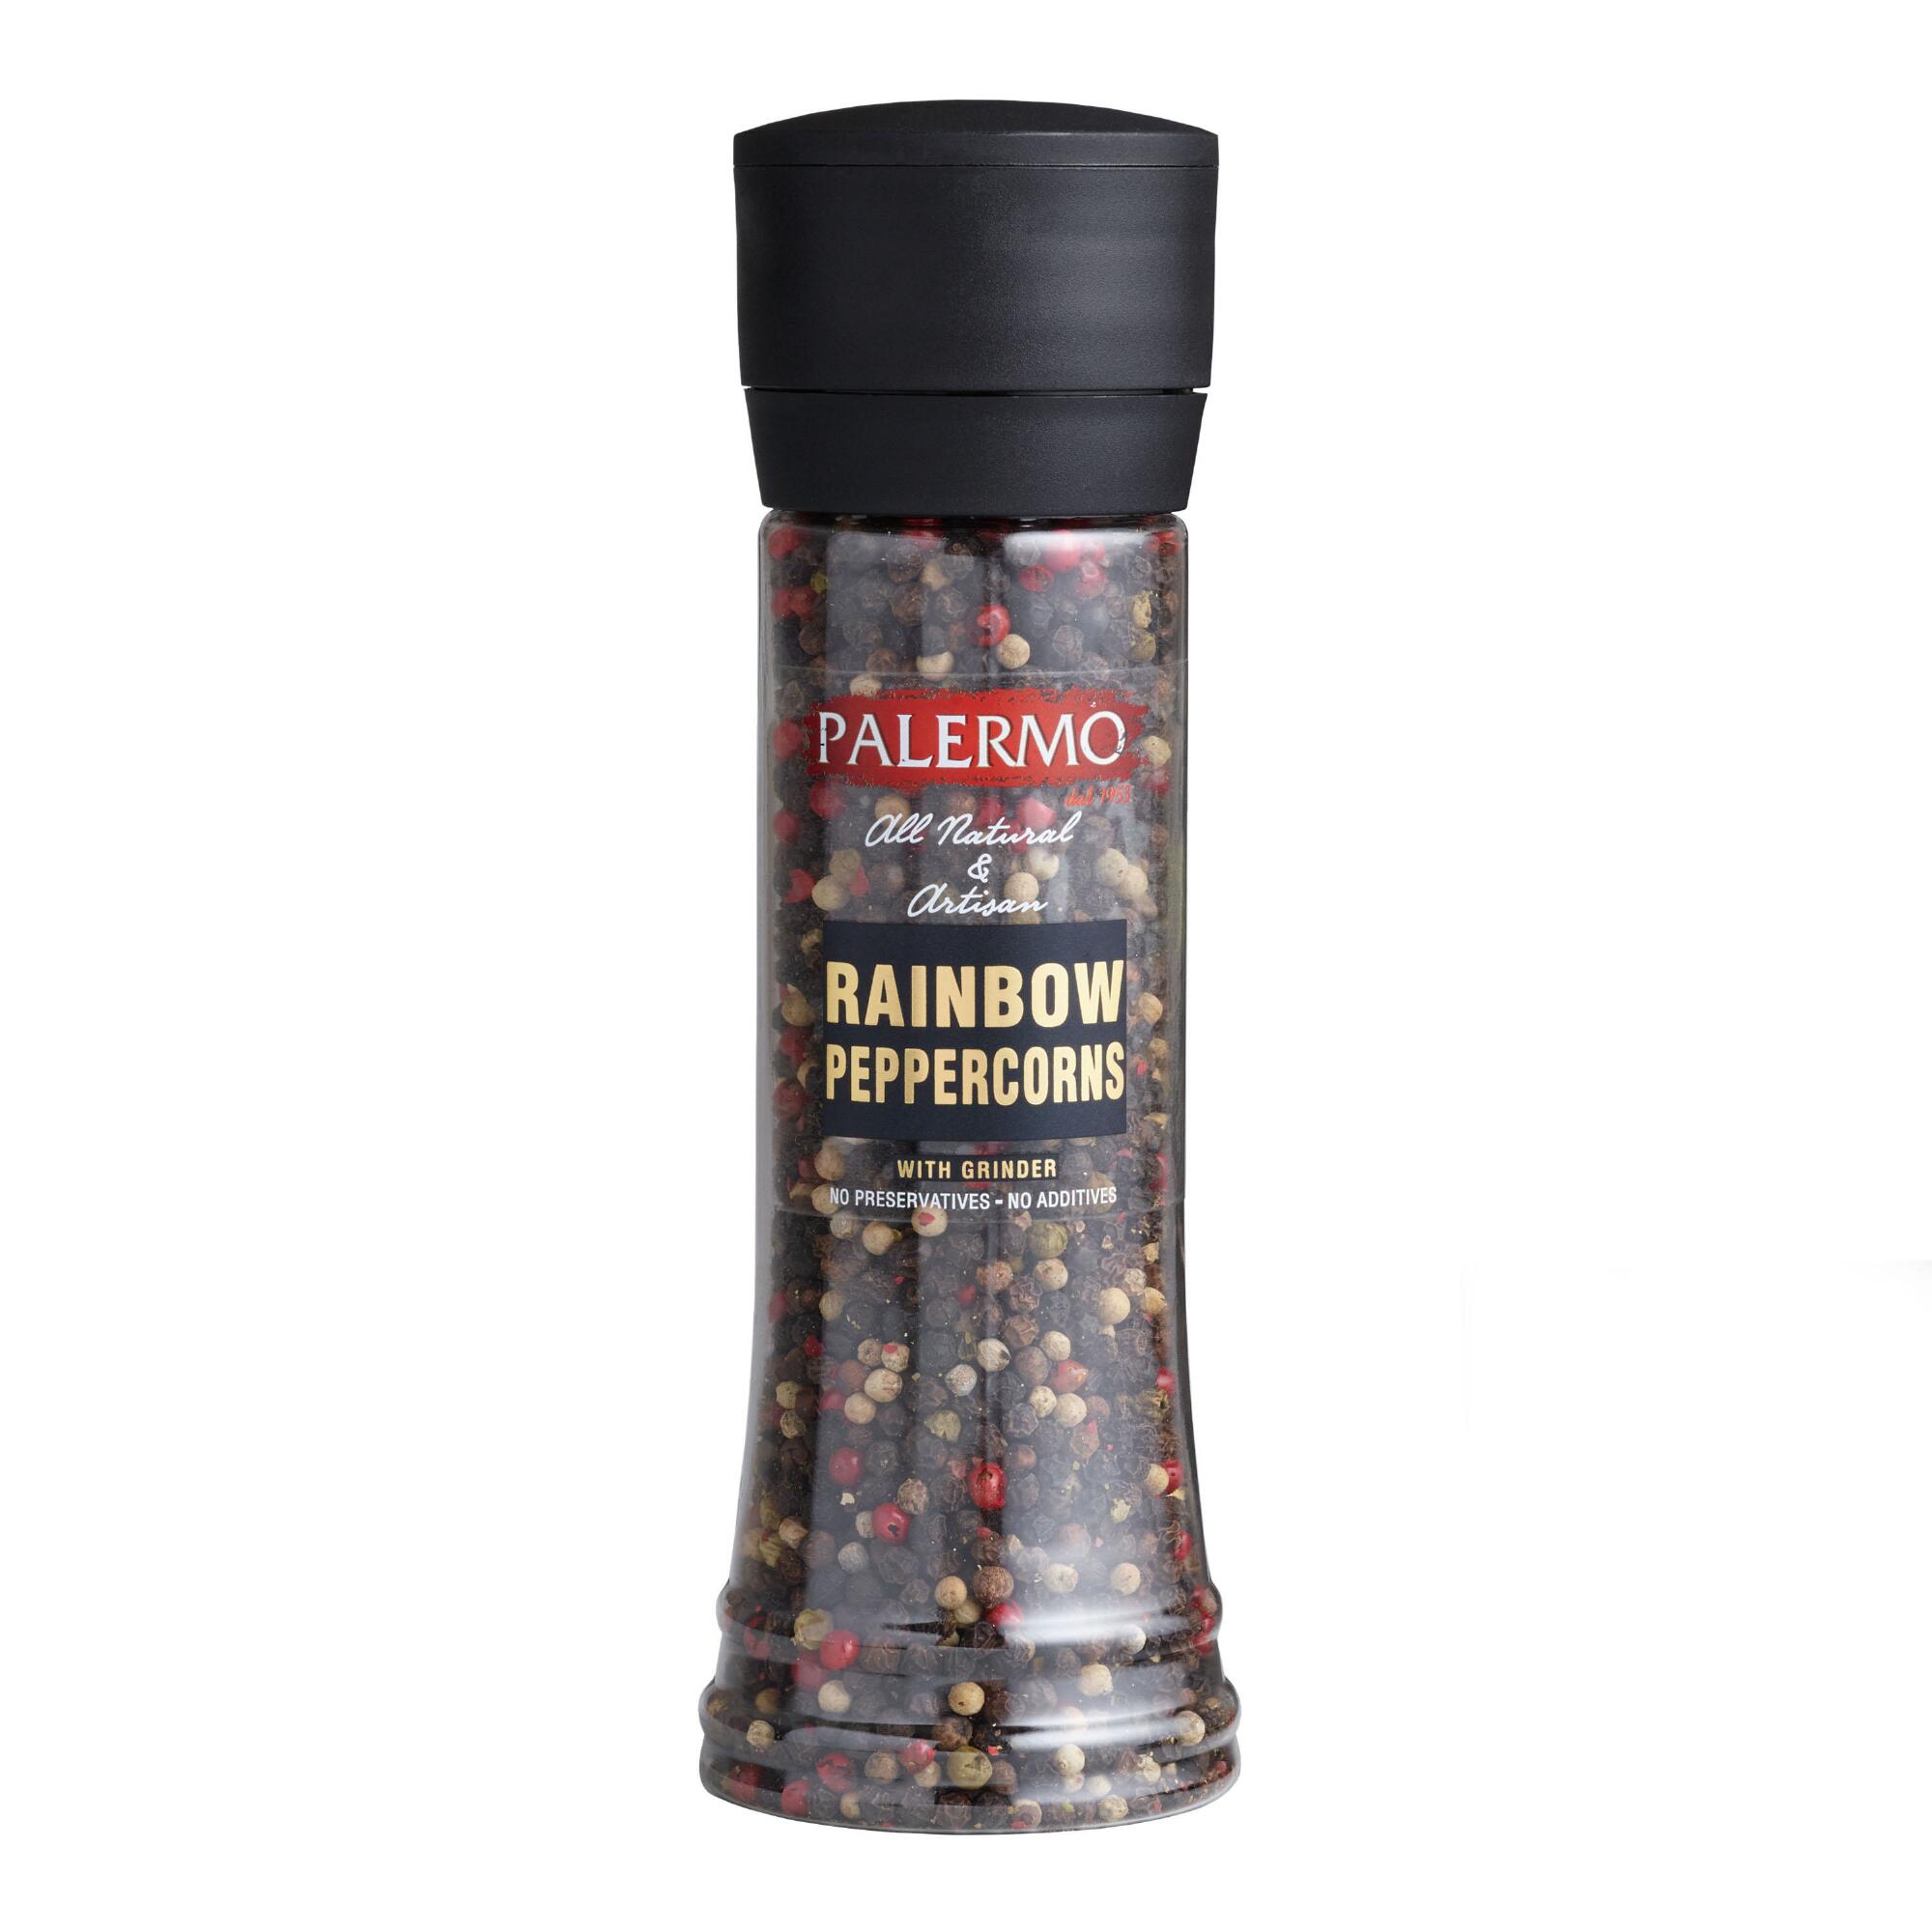 Palermo Rainbow Peppercorn Grinder by World Market